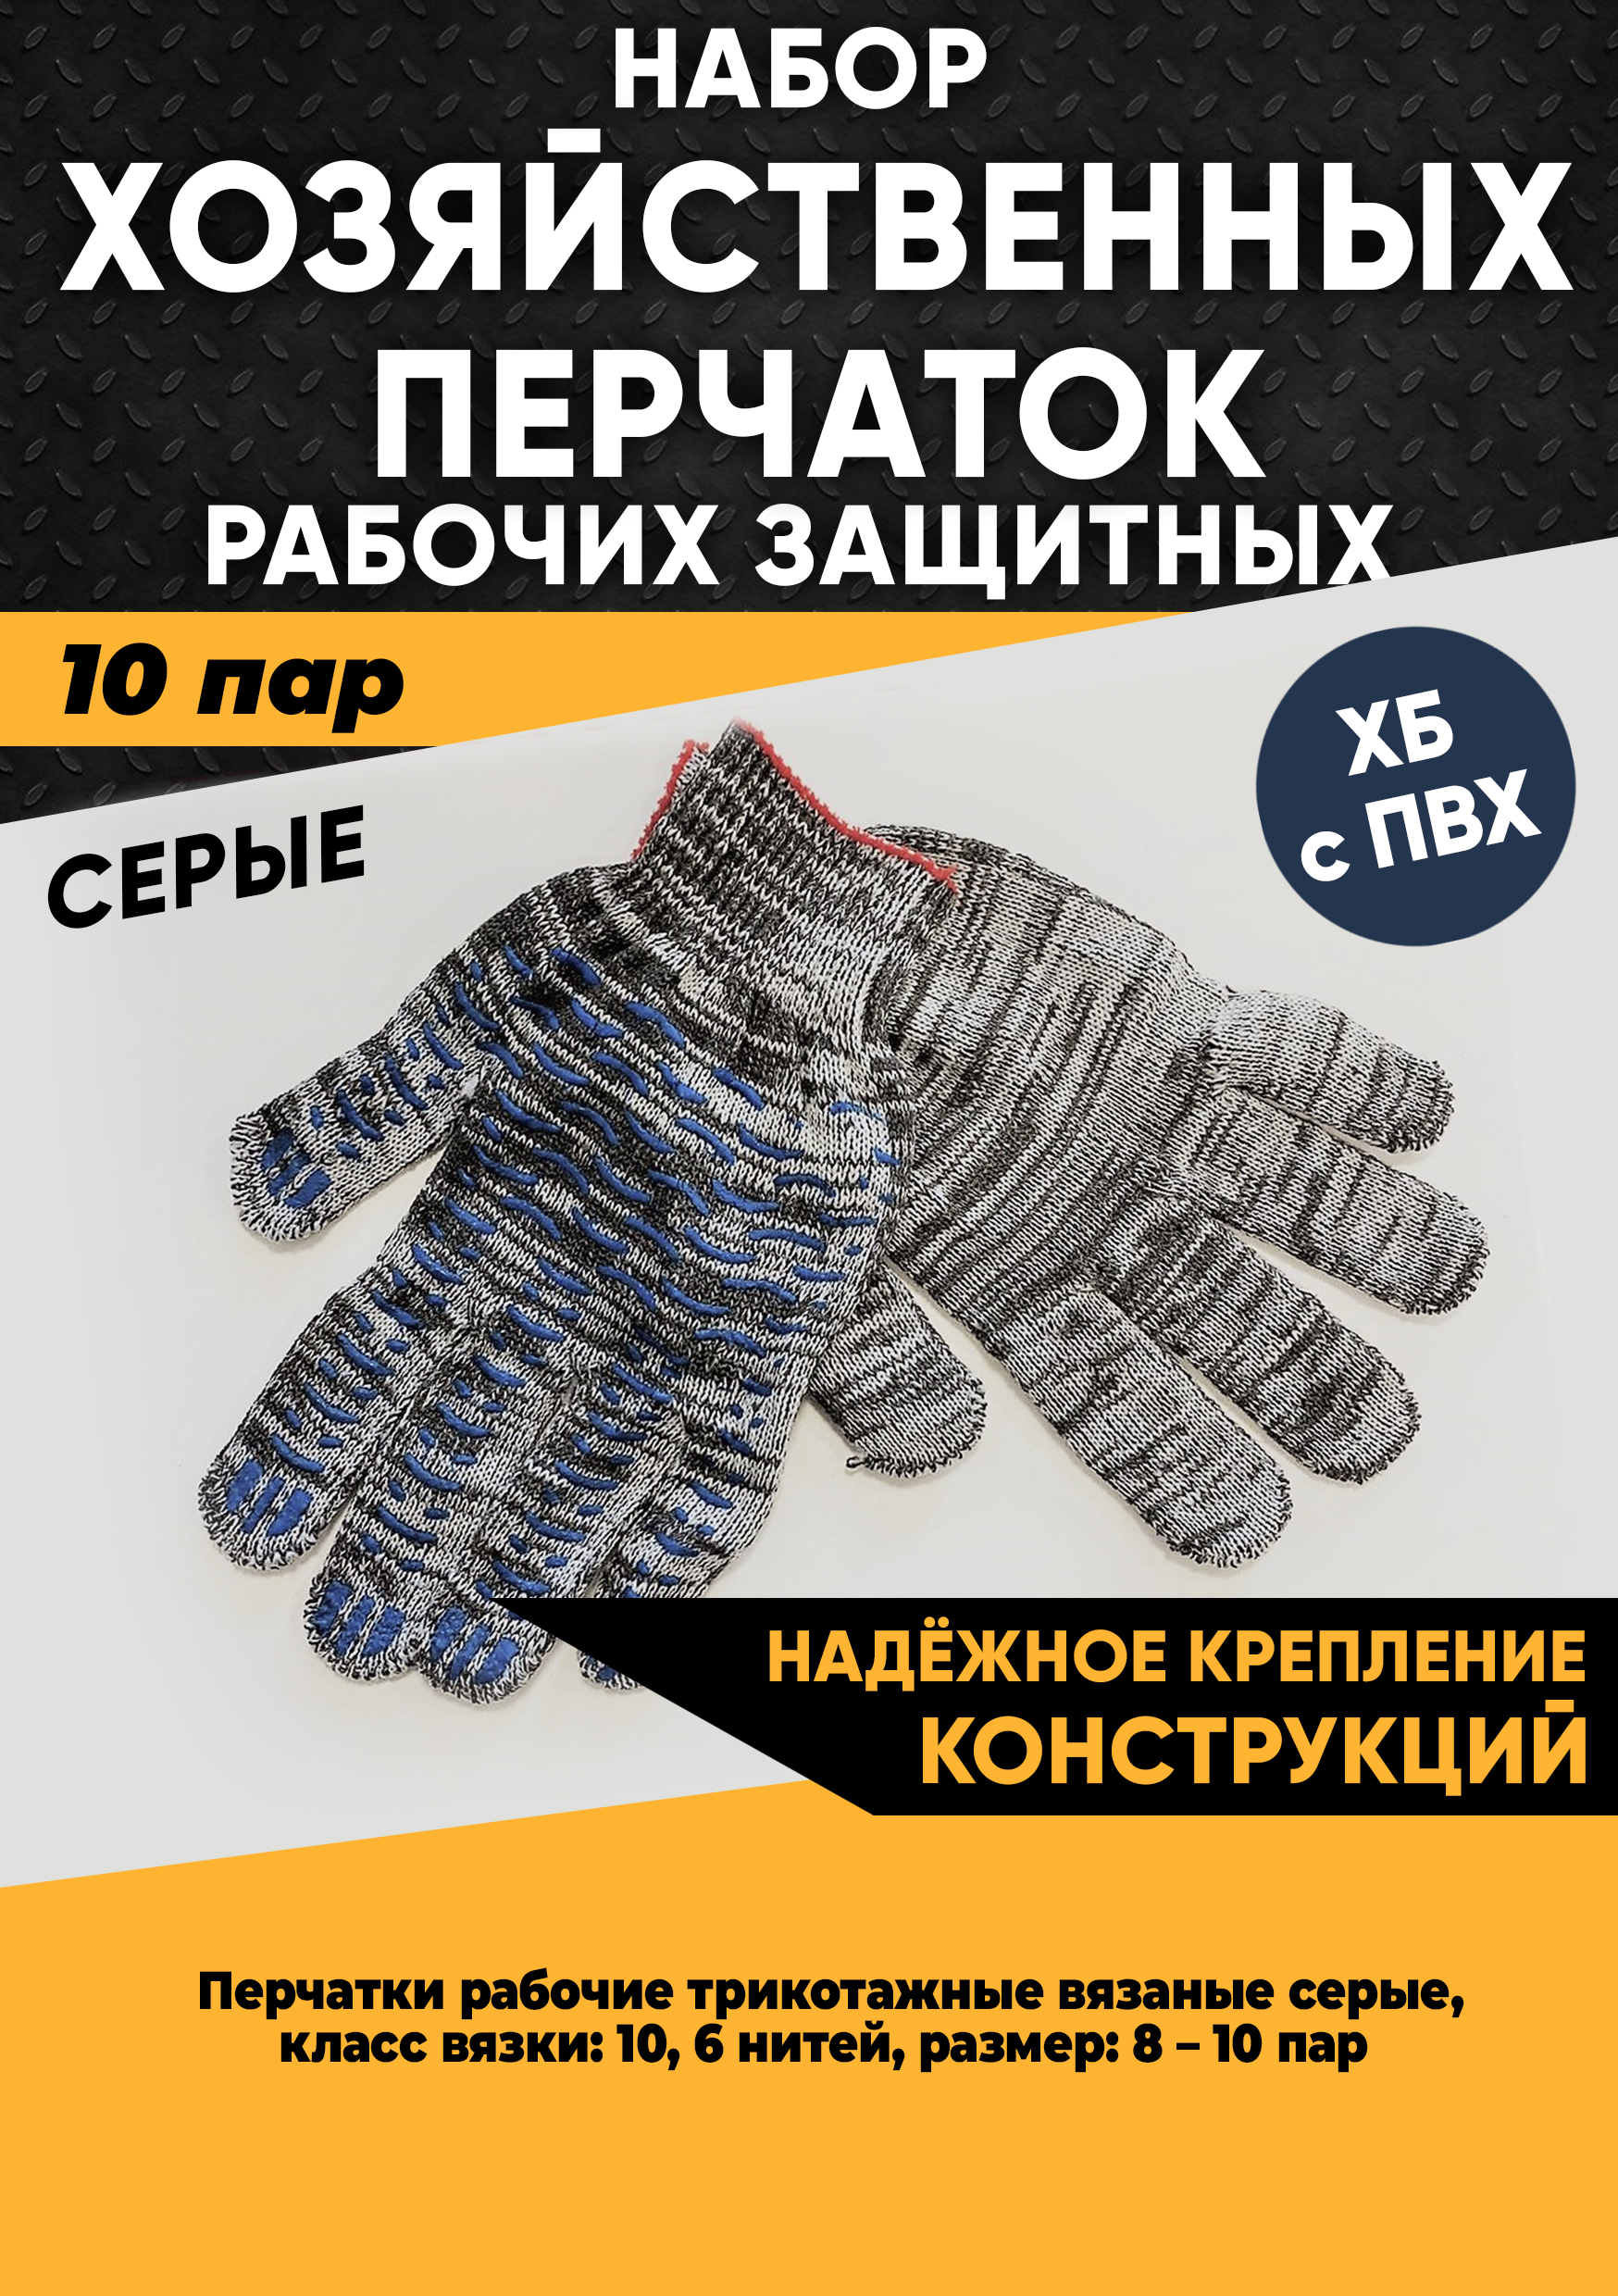 Хозяйственные перчатки KraSimall рабочие защитные ХБ с ПВХ, 6 нитей, серые, 10 пар, 100265 хозяйственные перчатки paclan